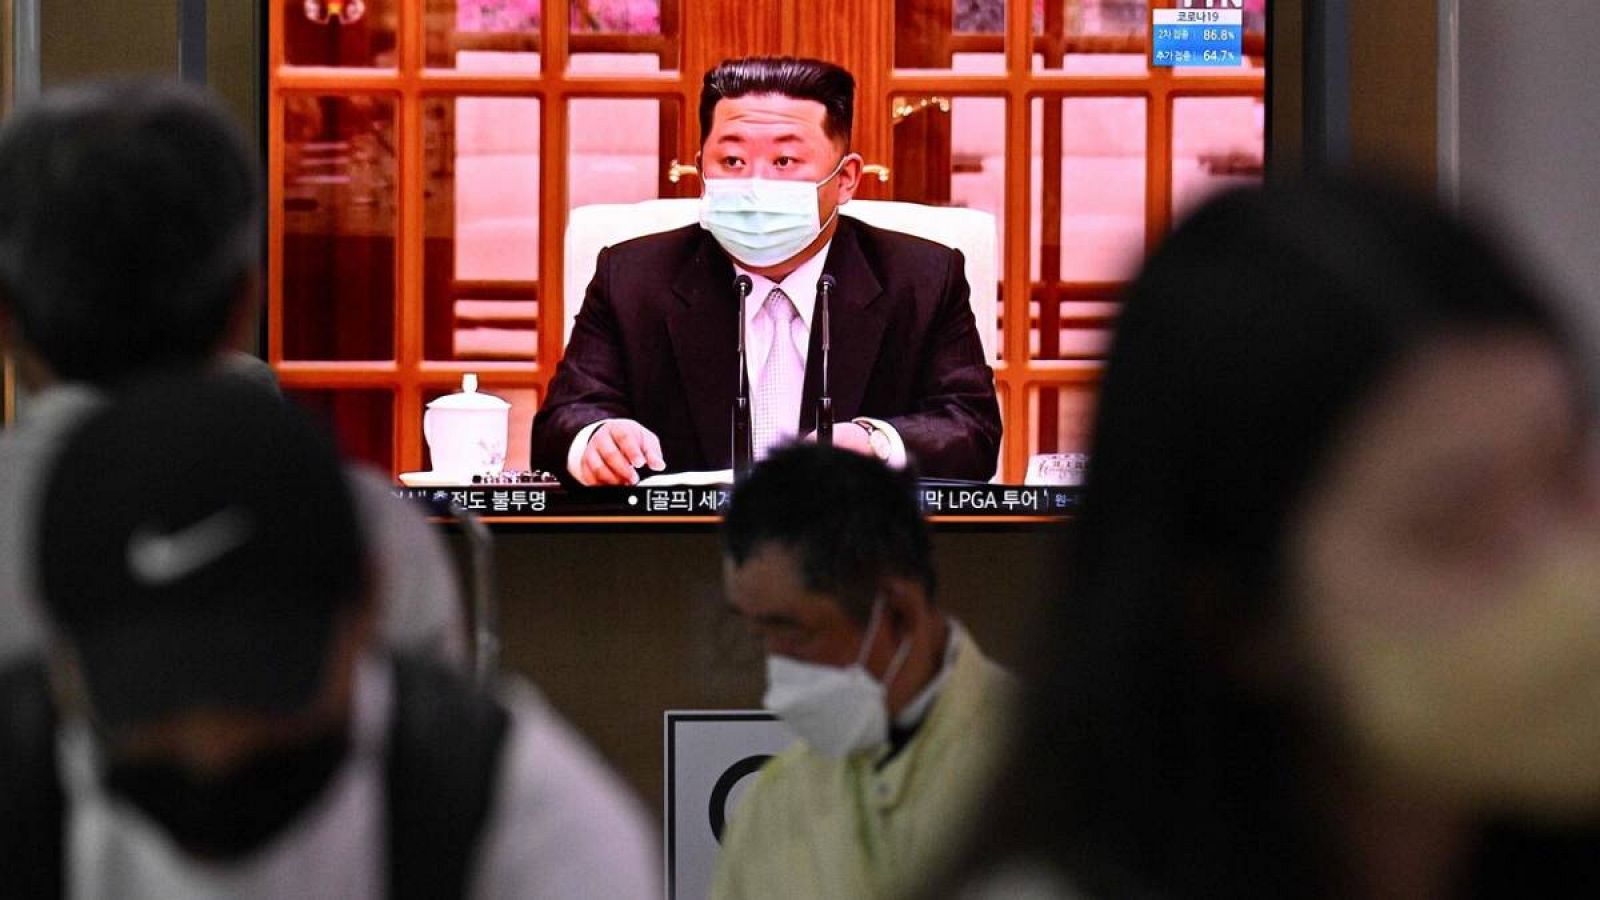 El líder de Corea del Norte, Kim Jong-Un, aparece con mascarilla en la televisión por primera vez desde que comenzó la pandemia en el mundo.